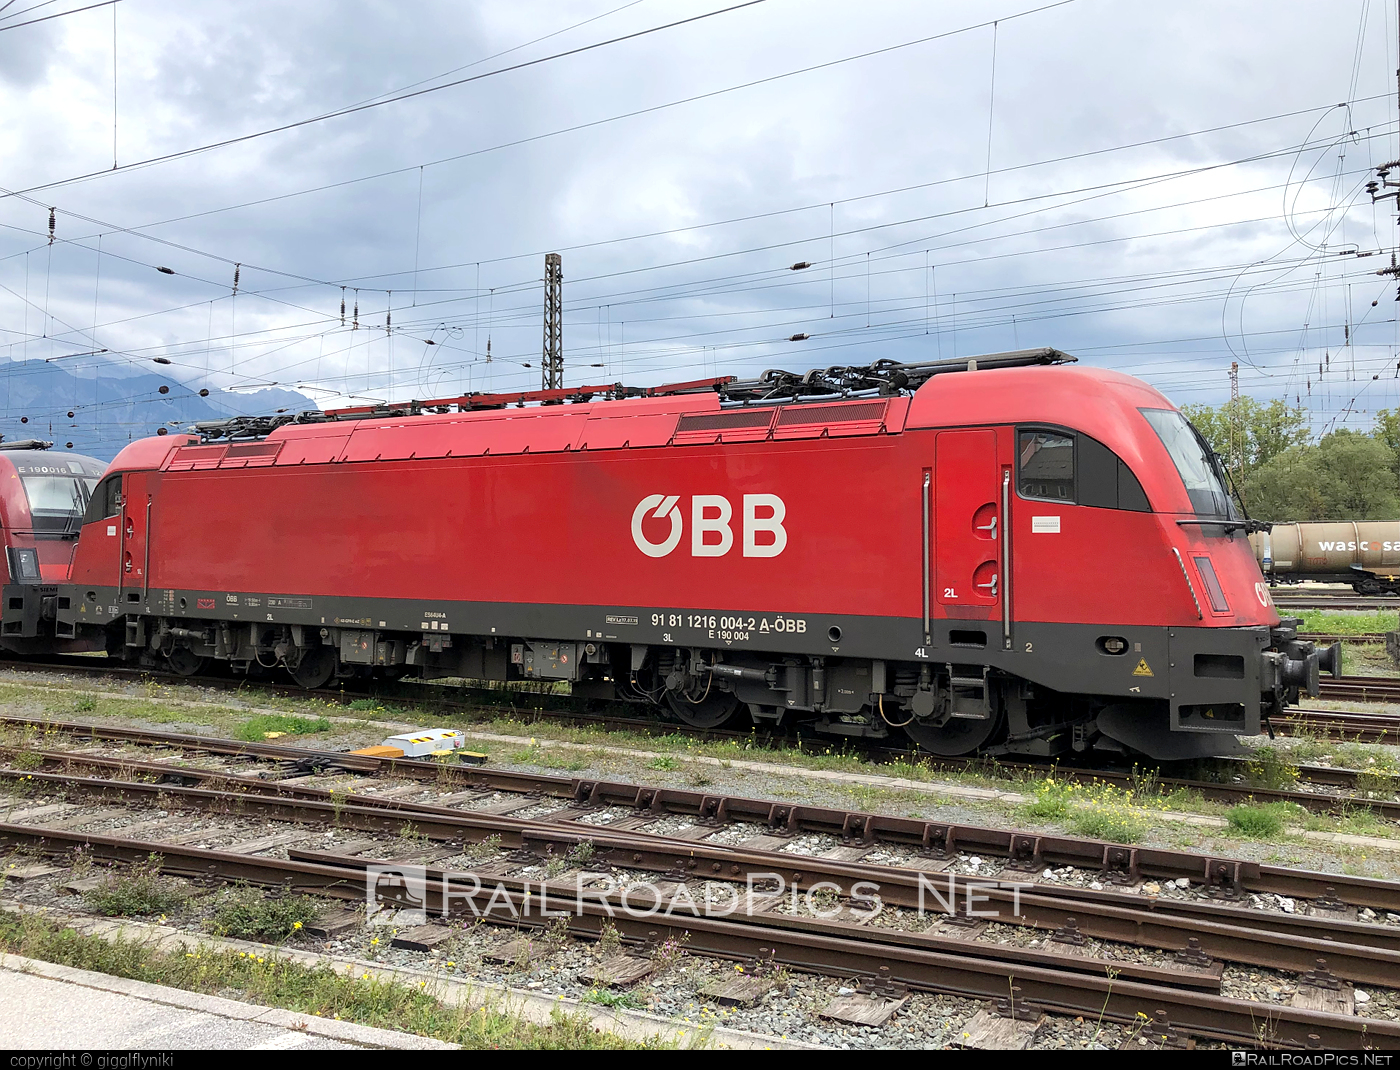 Siemens ES 64 U4 - 1216 004 operated by Österreichische Bundesbahnen #es64 #es64u4 #eurosprinter #obb #osterreichischebundesbahnen #siemens #siemensEs64 #siemensEs64u4 #siemenstaurus #taurus #tauruslocomotive